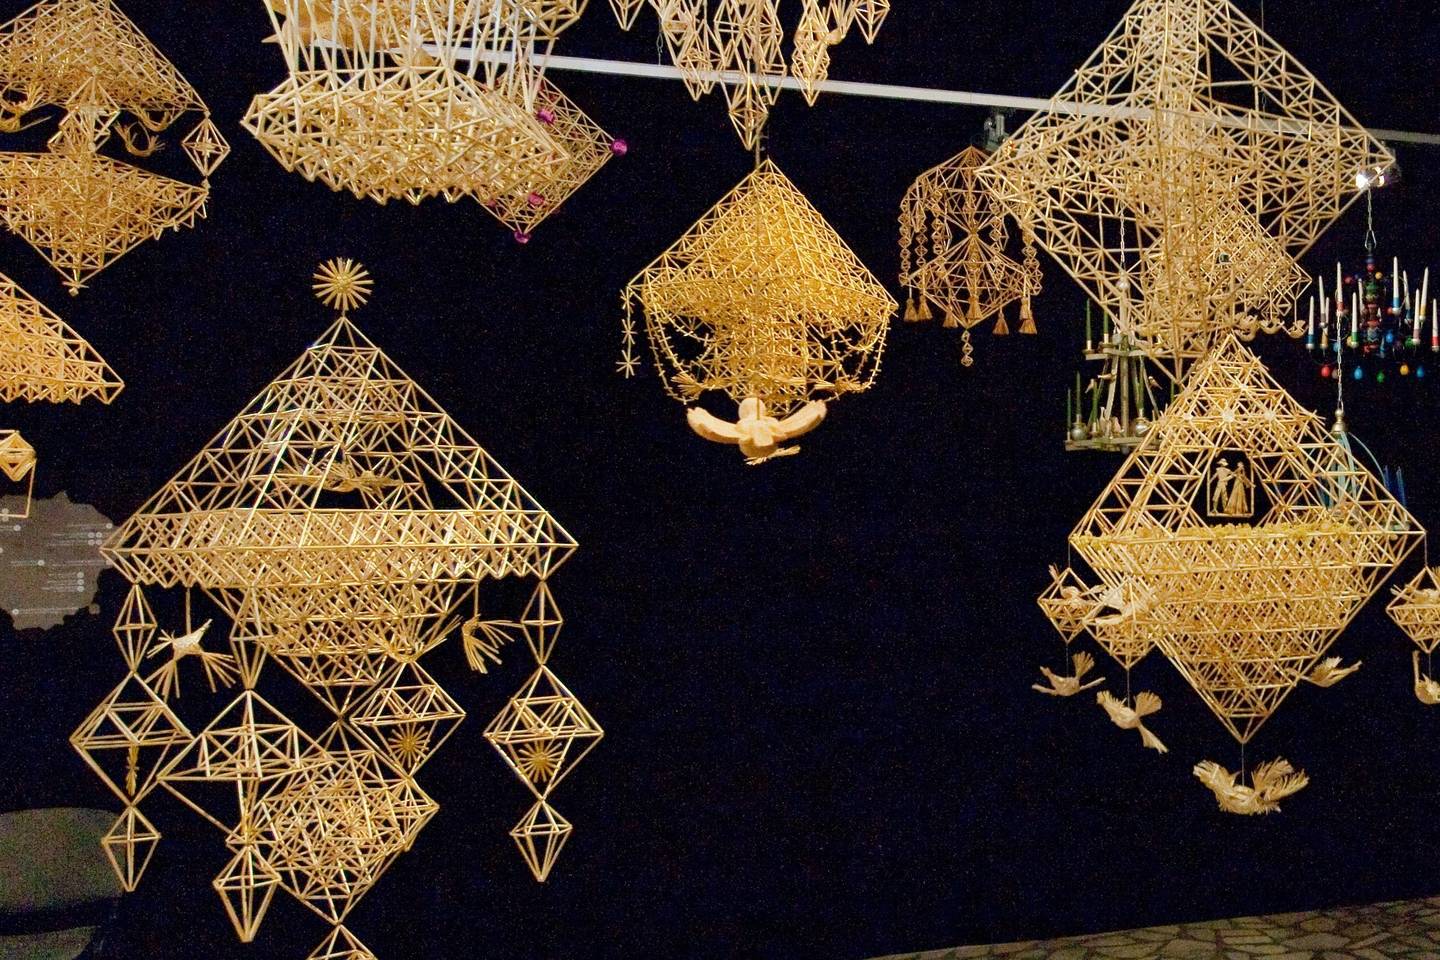 Sodų rišimo tradicija įtraukta į Nematerialaus kultūros paveldo vertybių sąvadą. 